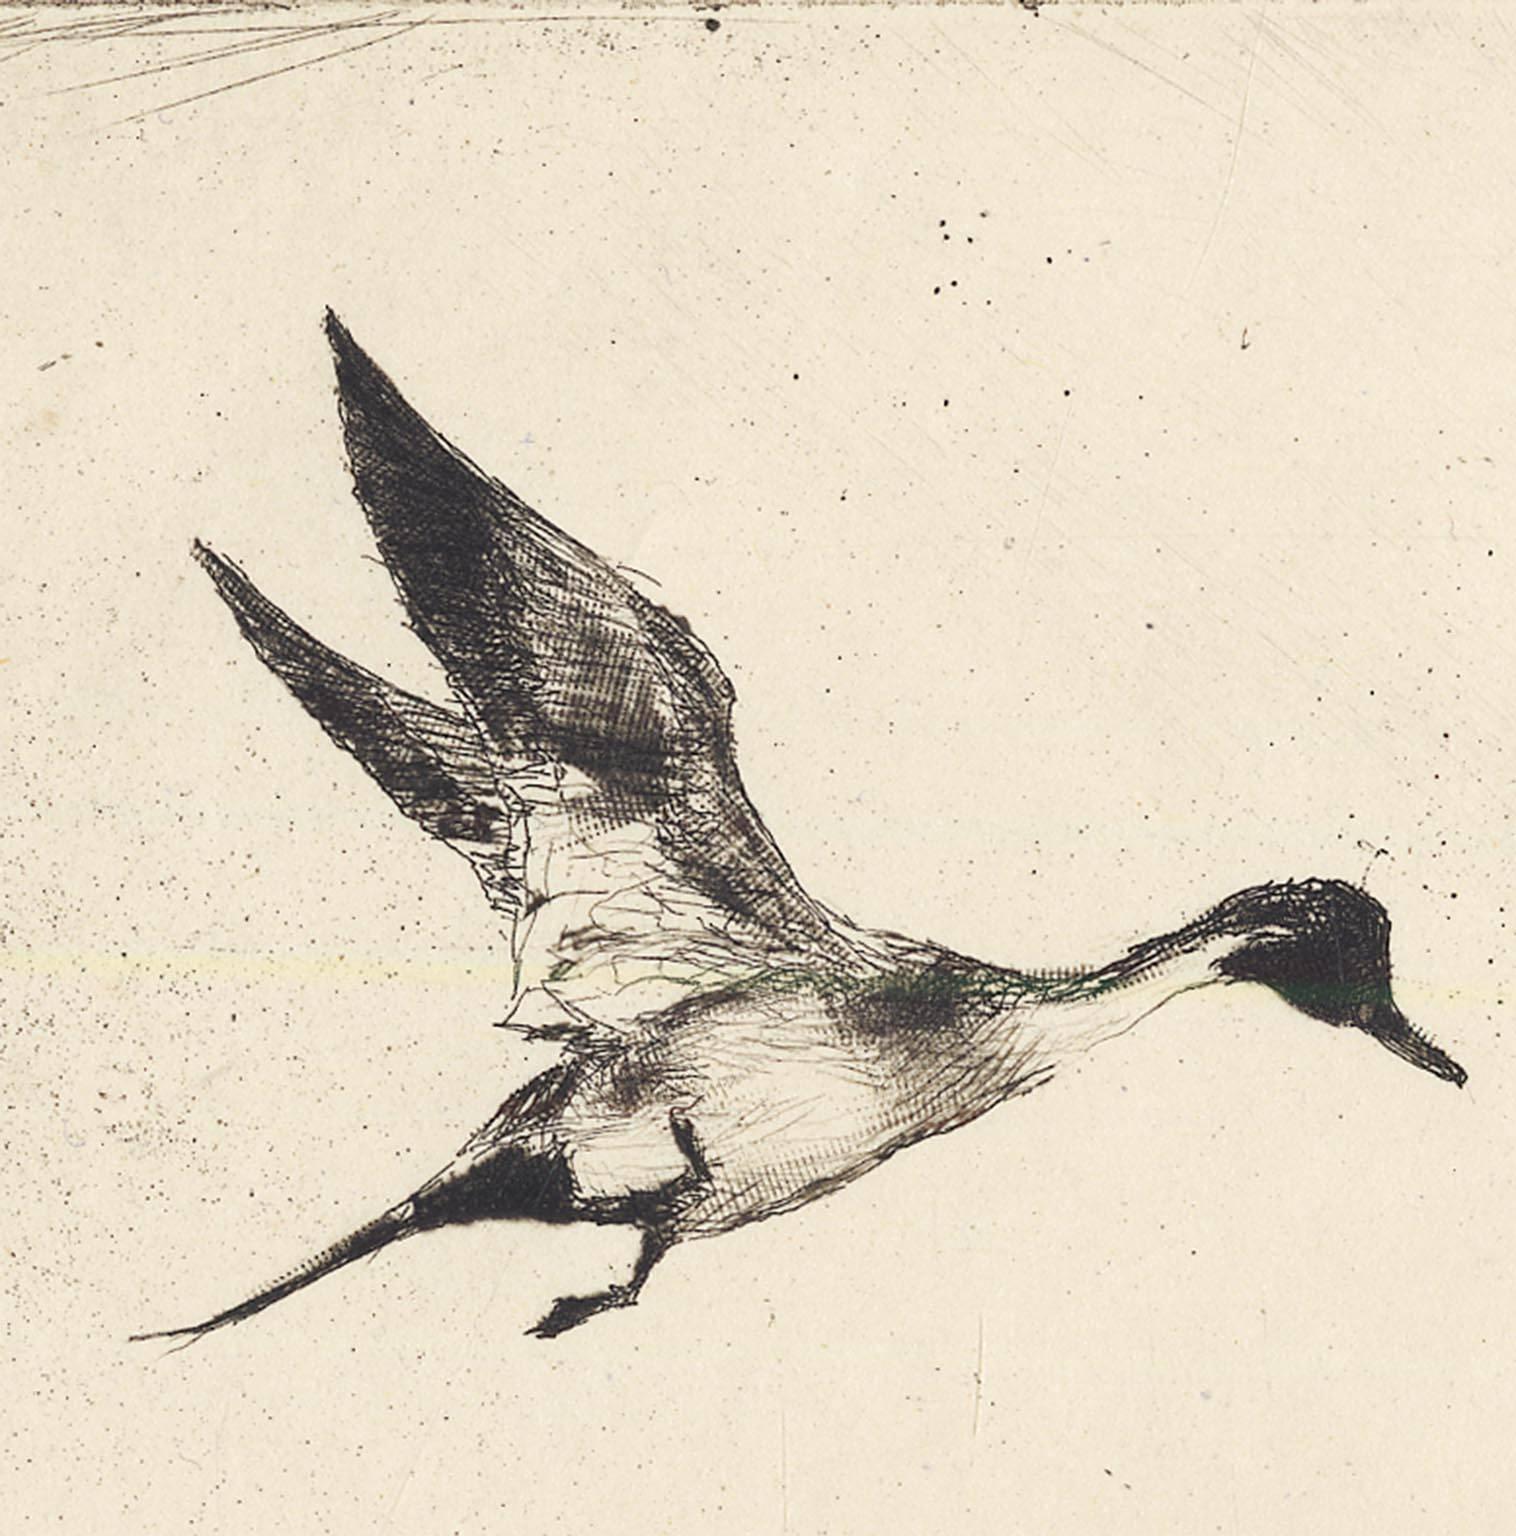 Einzigartiger Nadelschwanz. (Weiß), Print, von Frank Benson